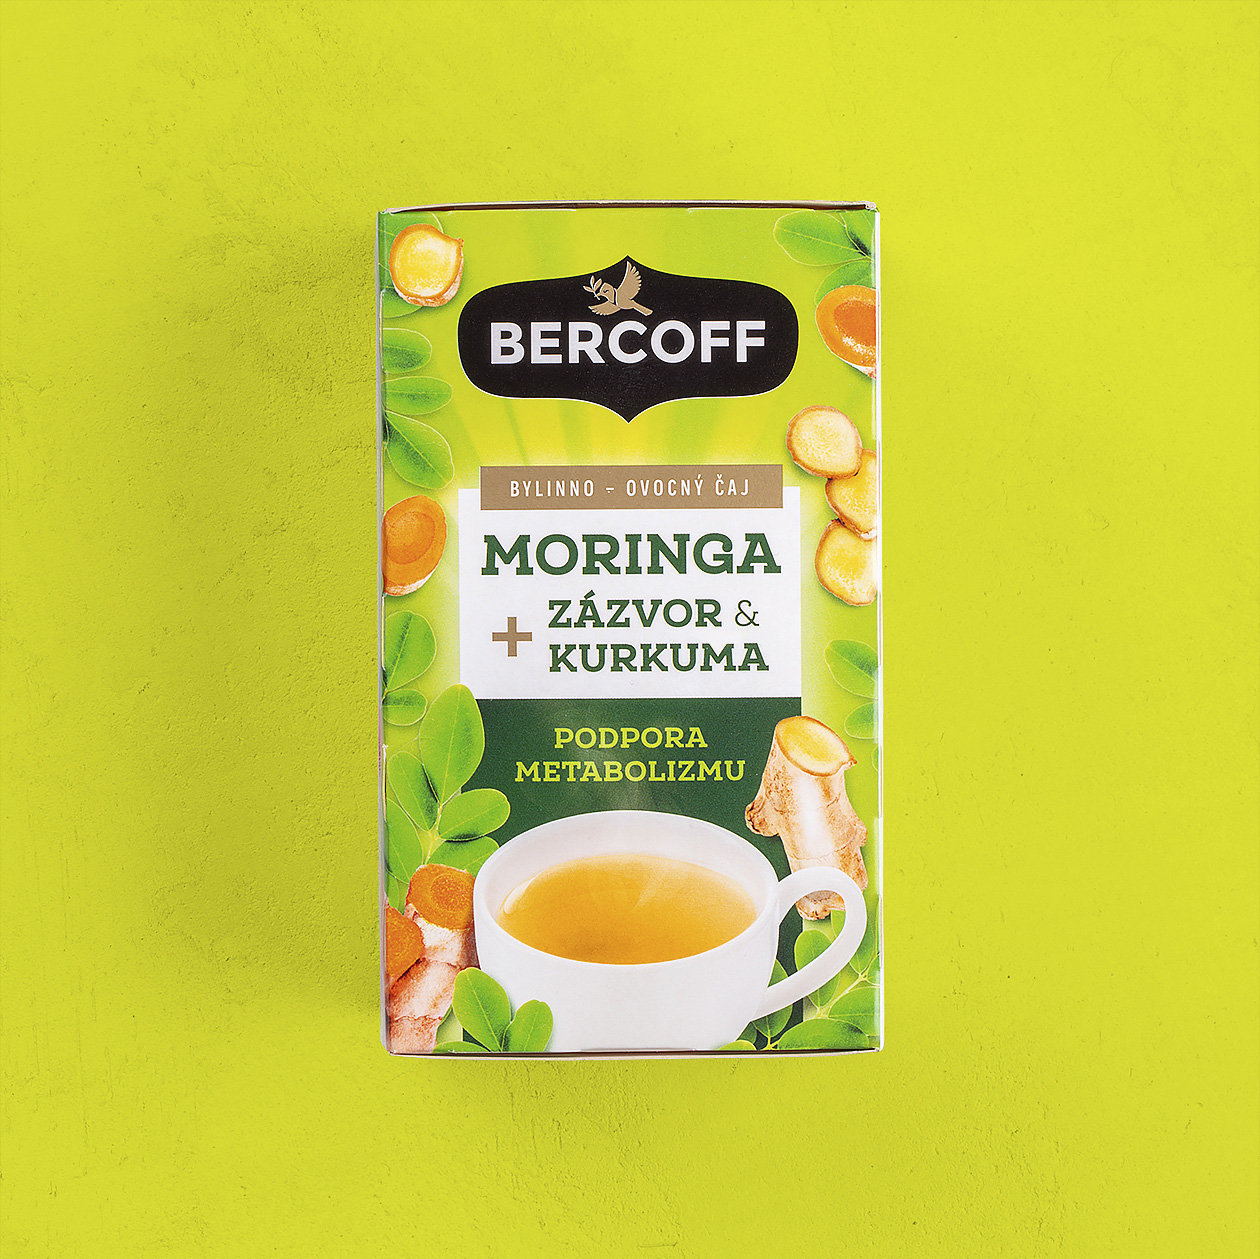 packaging bercoff tea imunity